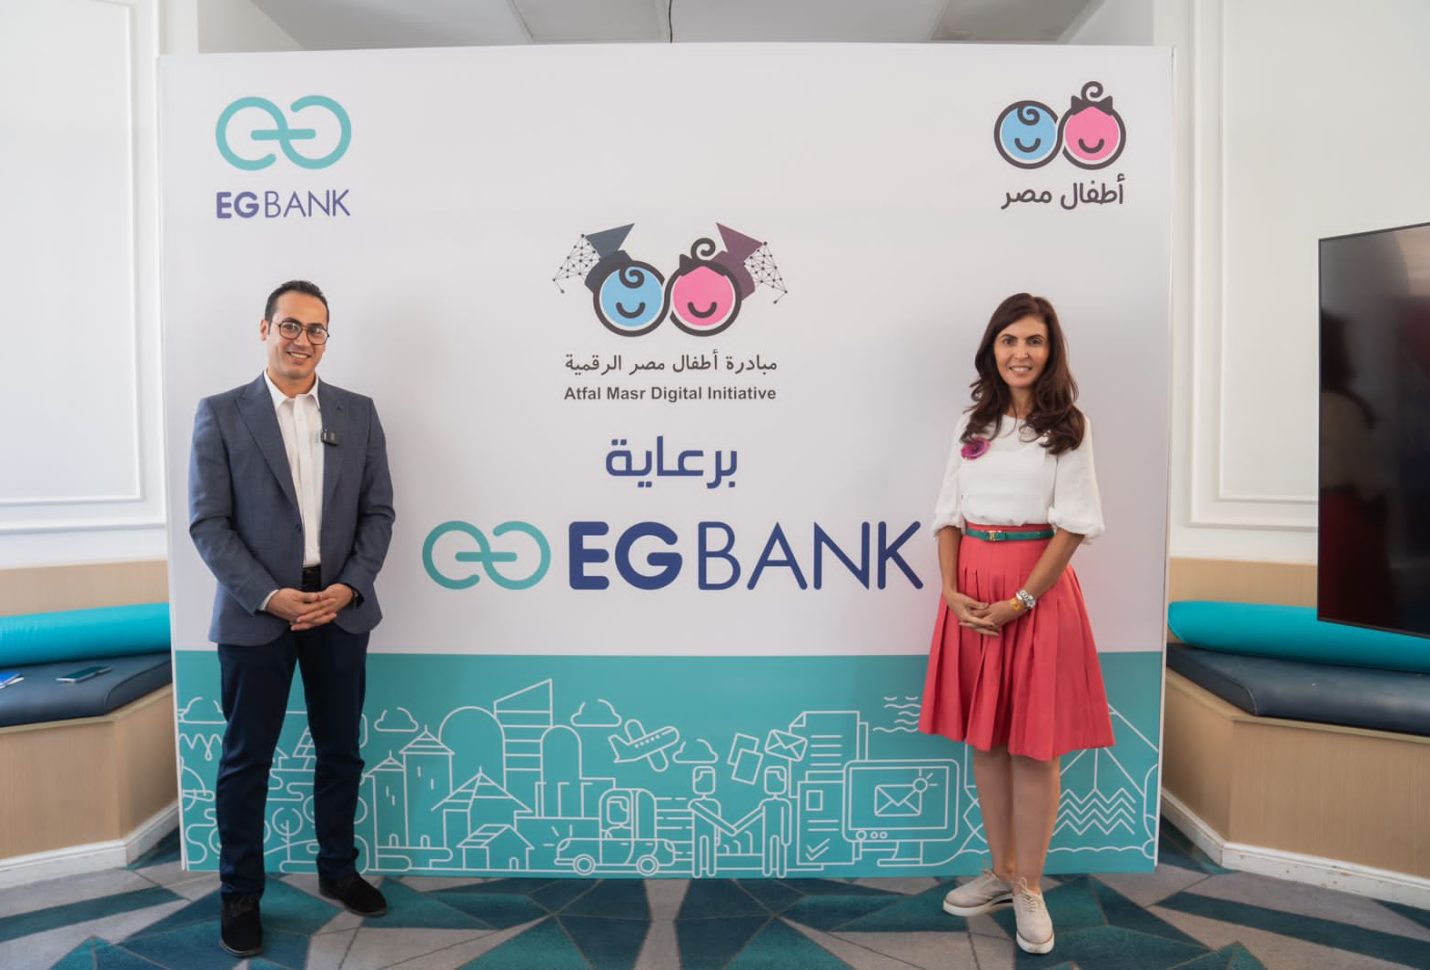 «إي جي بنك» يدعم مبادرة أطفال مصر الرقمية لتعليم البرمجة والذكاء الاصطناعي